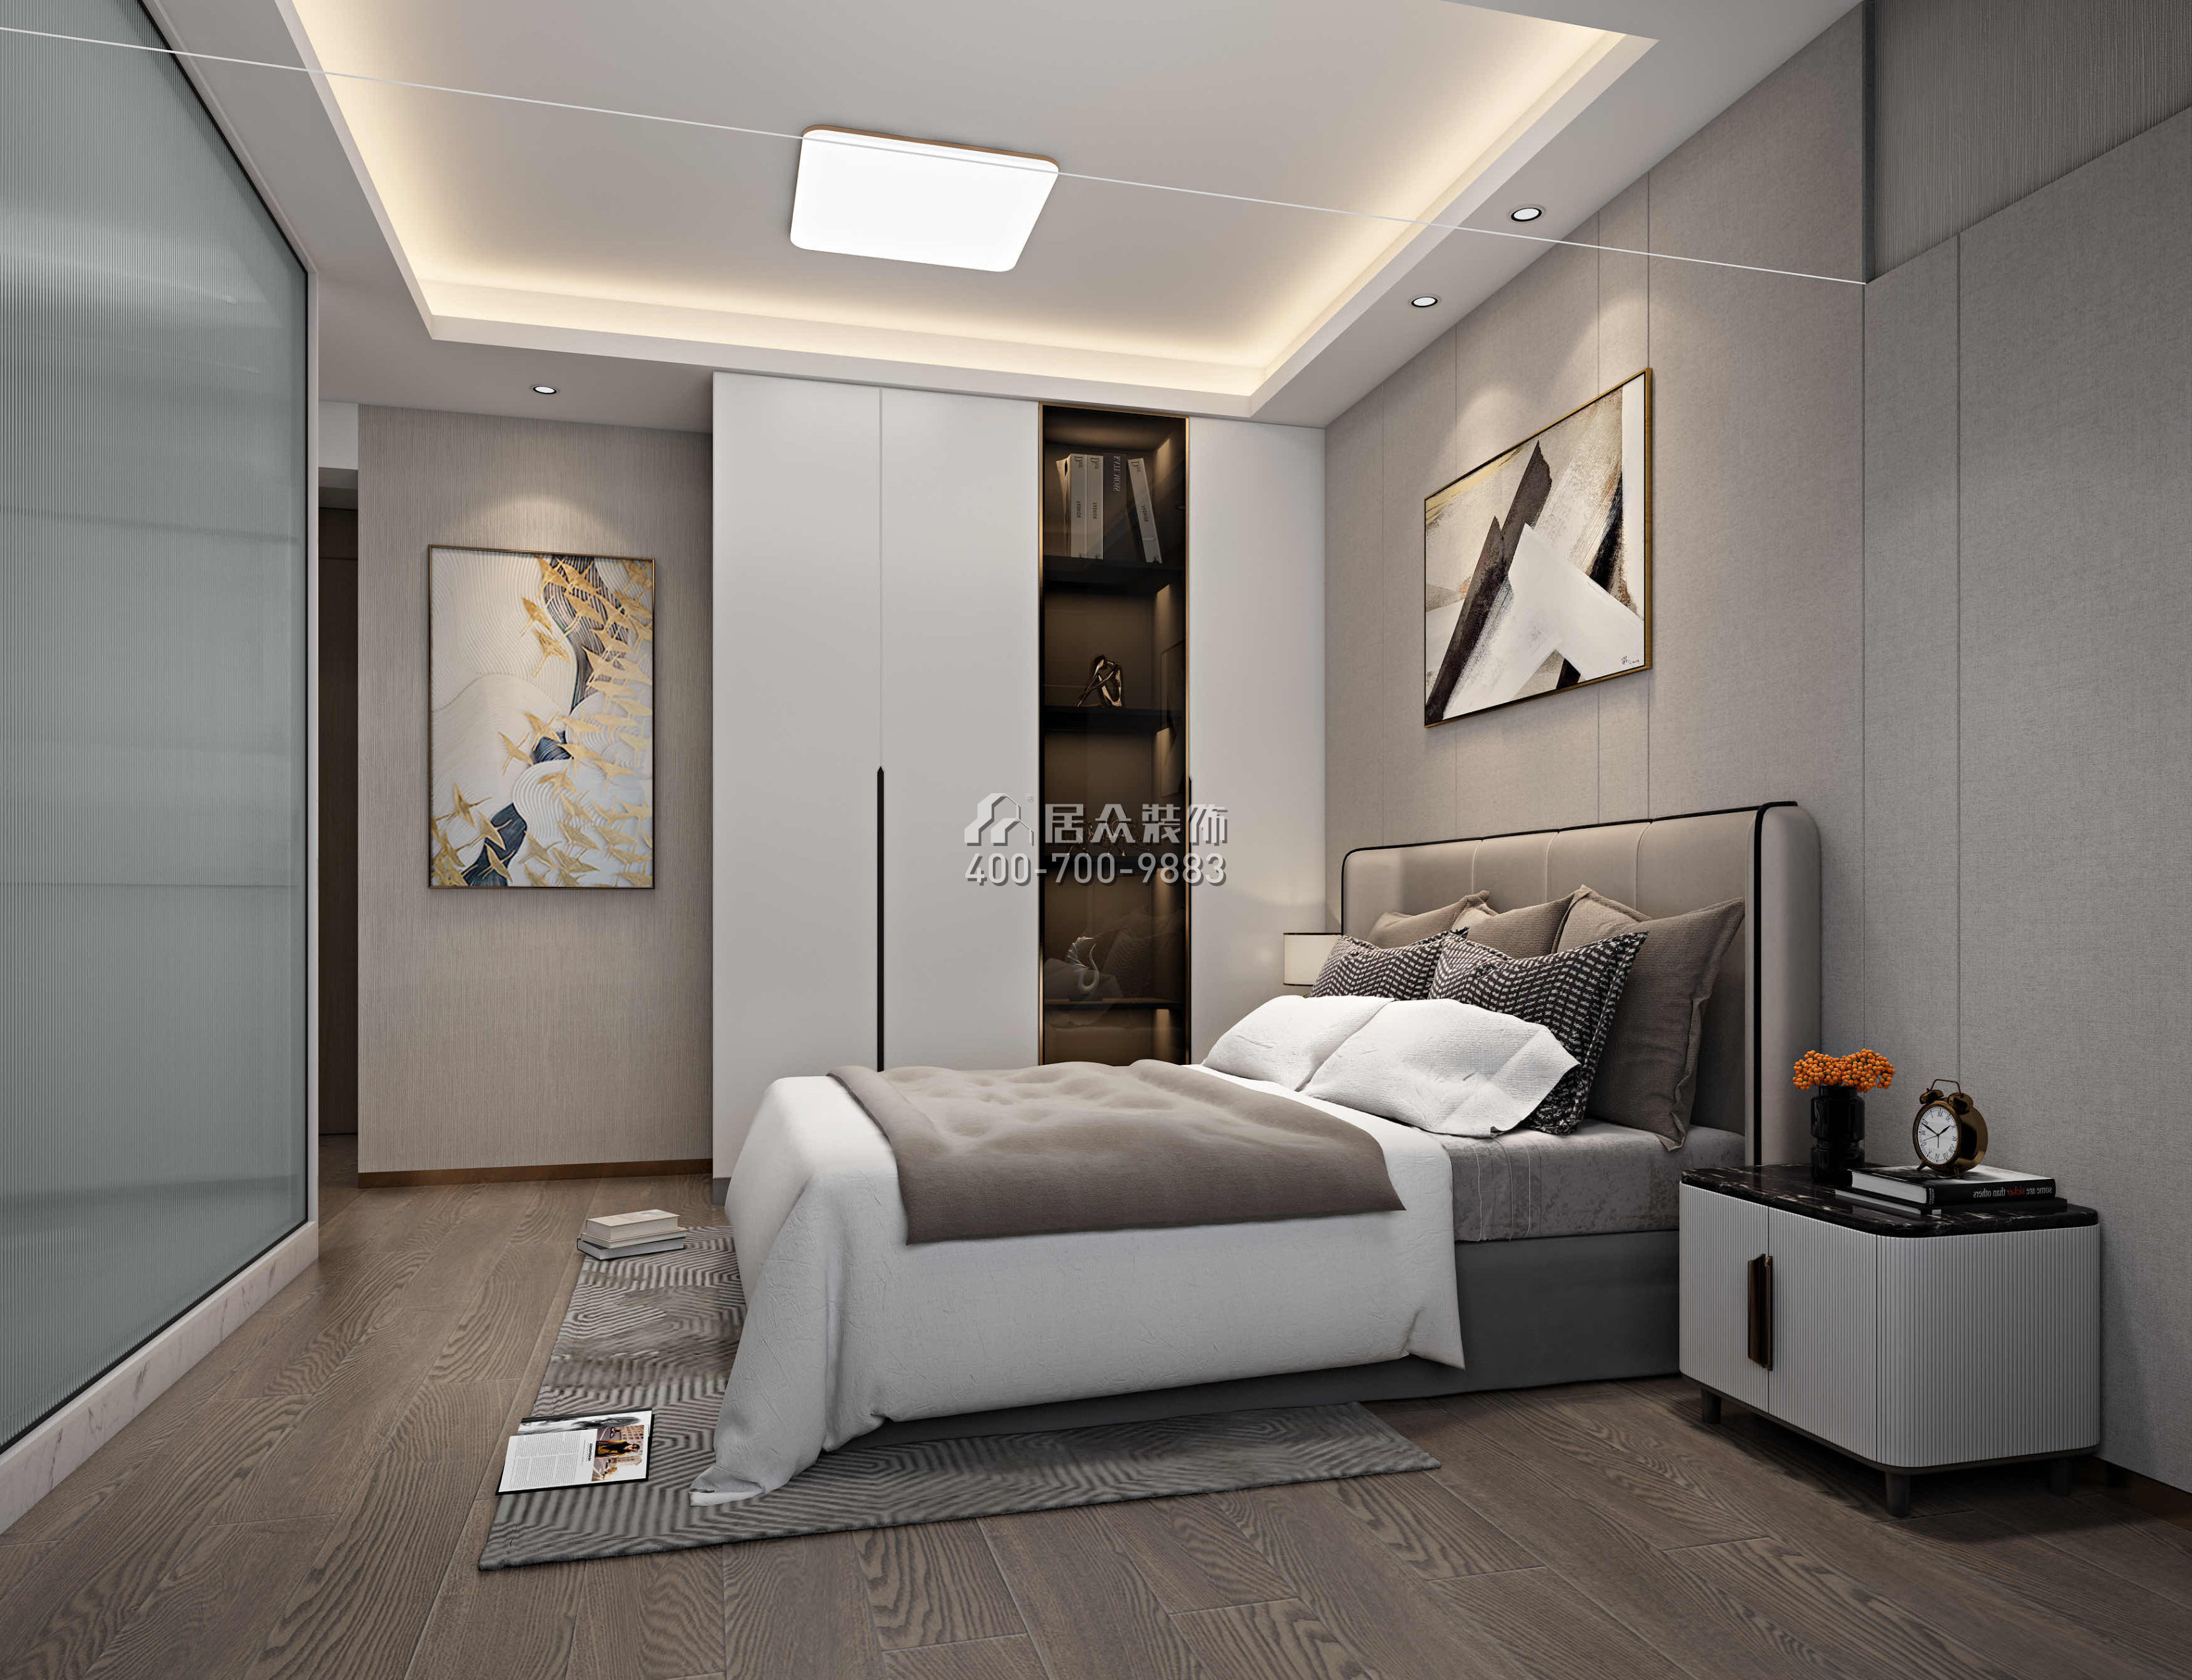 新天鹅堡122平方米现代简约风格平层户型卧室装修效果图